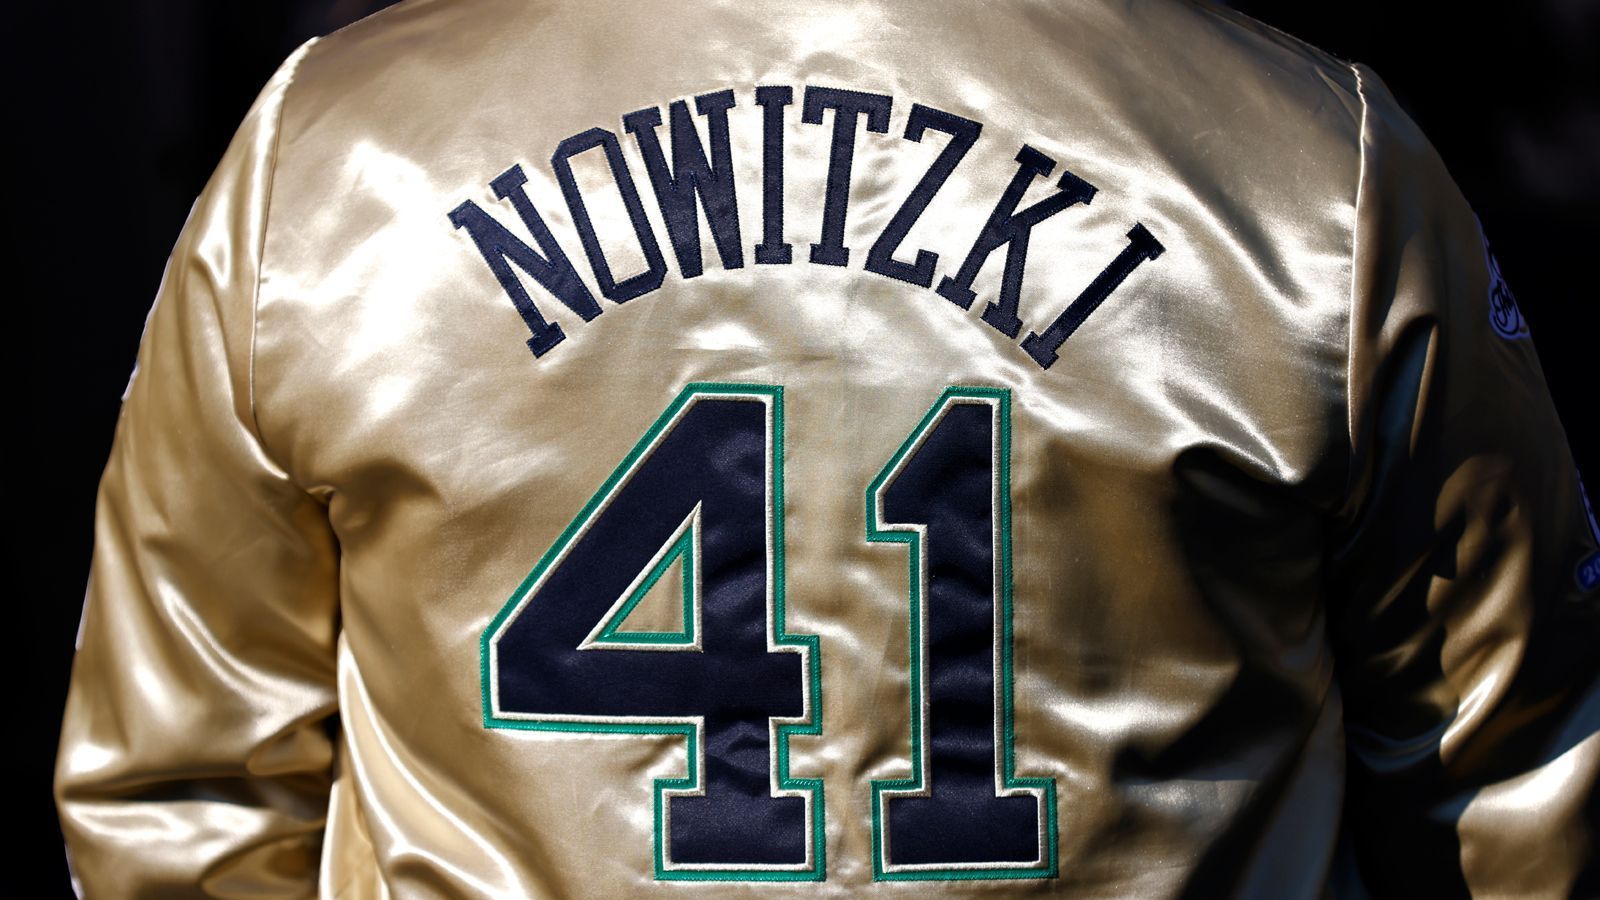 
                <strong>Nowitzki auf dem Weg in die Hall of Fame</strong><br>
                Der Weg zur Heim-Arena der Mavericks hört bereits auf den Namen "Nowitzki-Way", nun steht dort auch die Statue des besten deutschen Basketballers. Doch "Dirkules", wie Nowitzki in den USA häufig genannt wird, stehen weitere Ehrungen bevor. Die Aufnahme Nowitzkis in die Hall of Fame gilt als sicher.
              